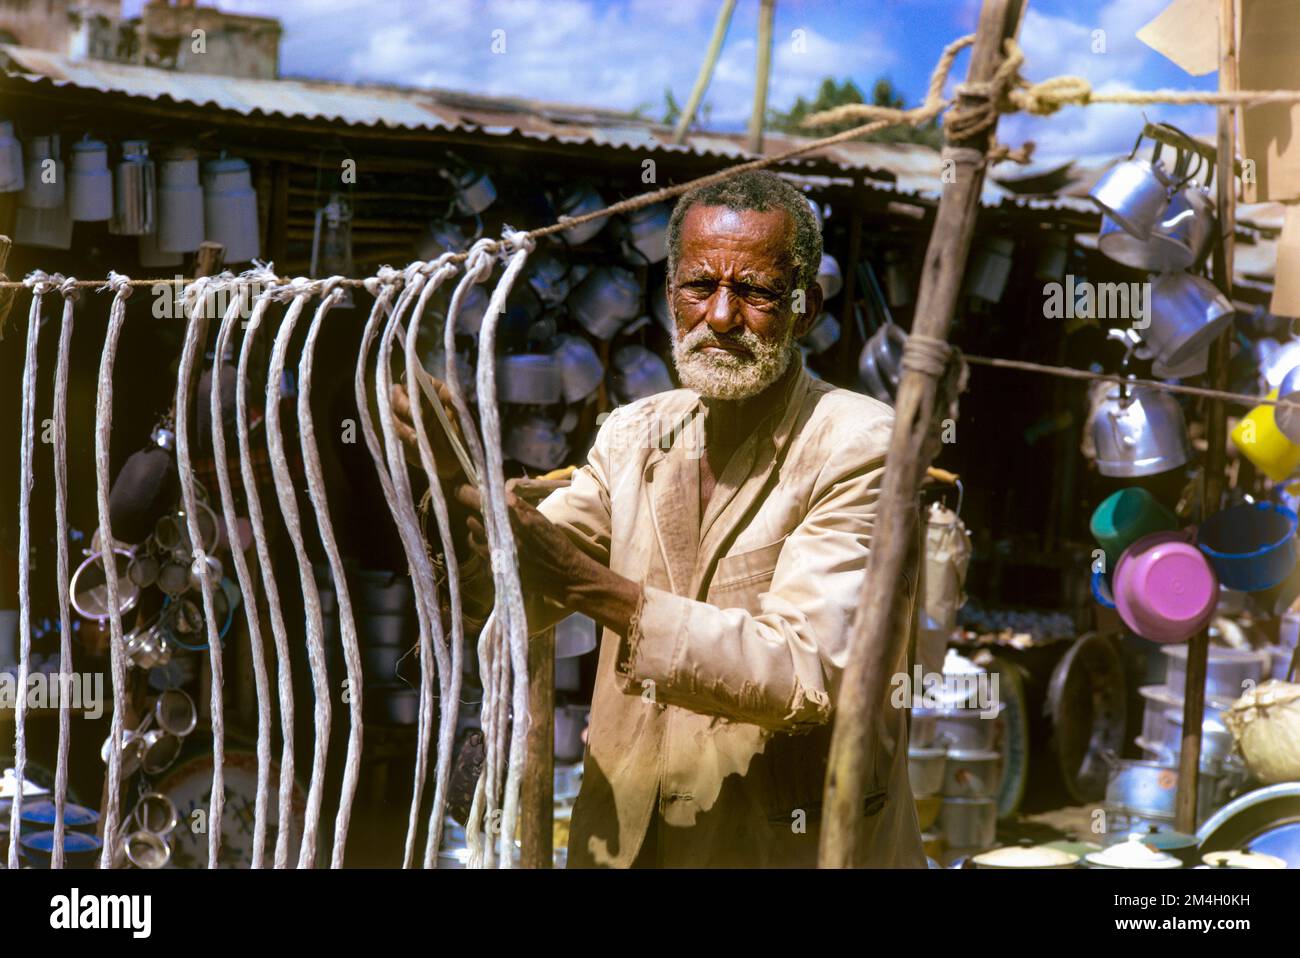 Ethiopia, 1970s, Addis Ababa, Addis Abeba, hardware shop, man, merchant, East Africa, Stock Photo